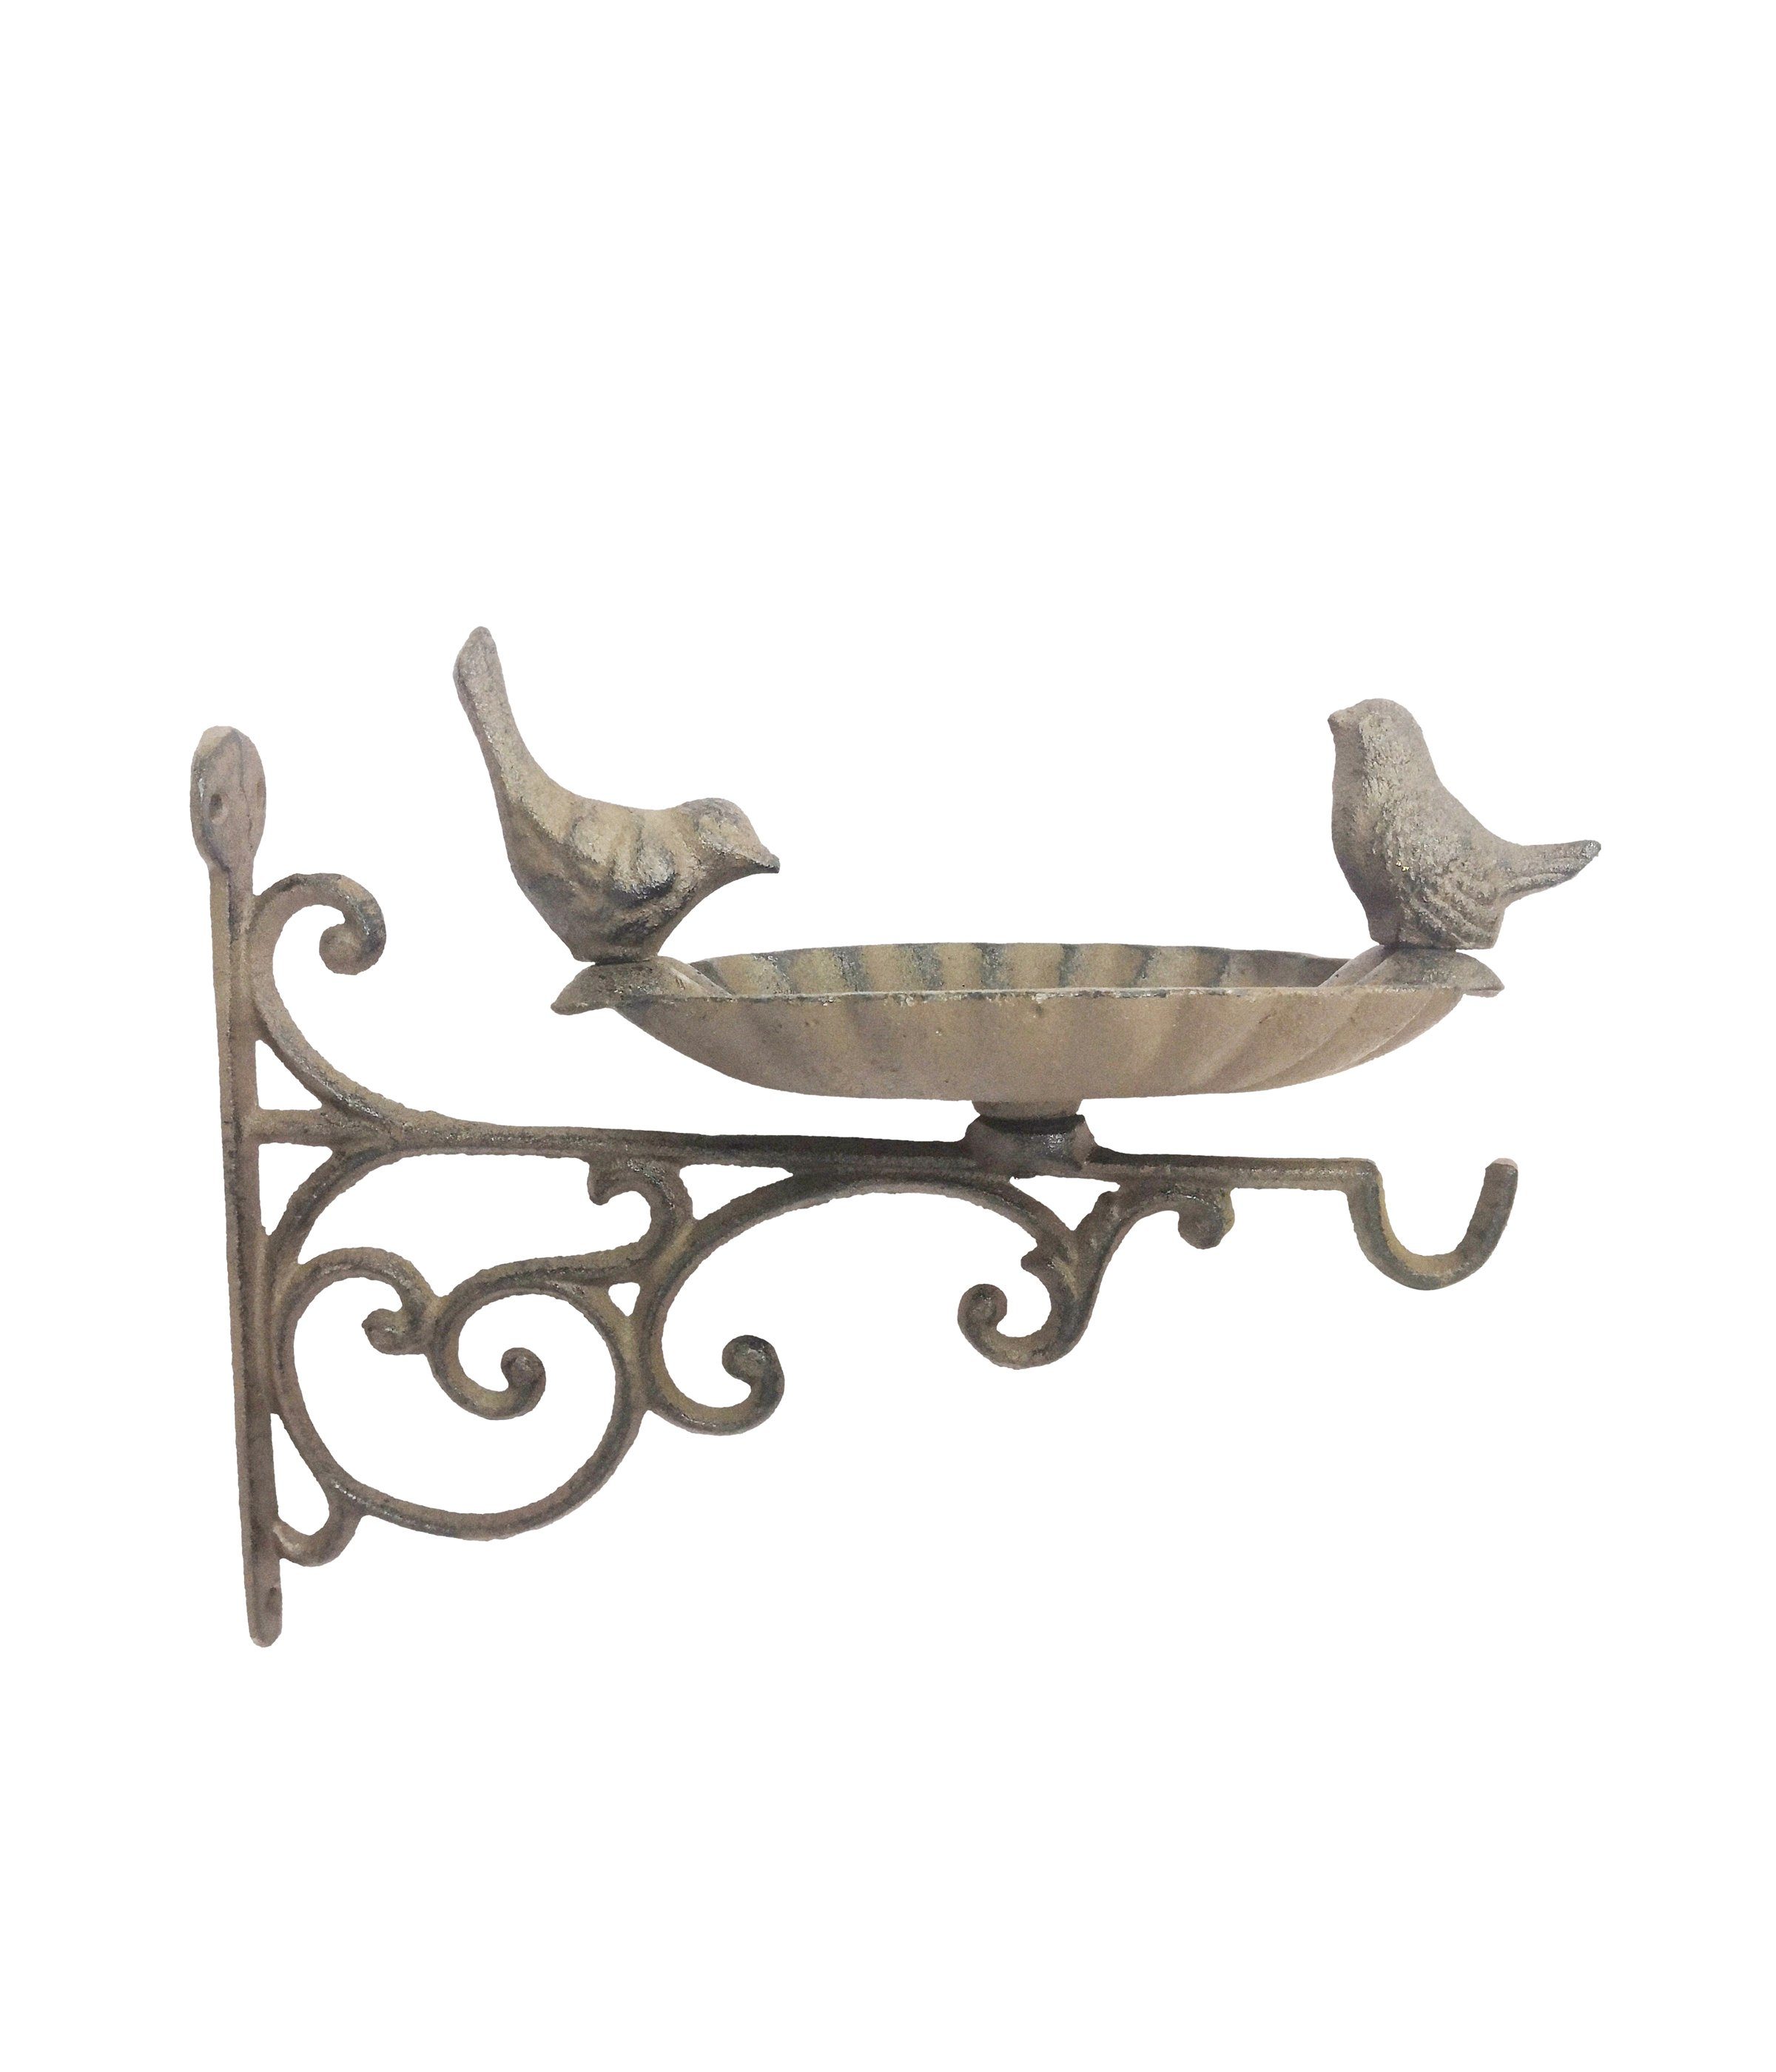 Dehner Gartenfigur Futterschale für Vögel, 23 x 30 x 14 cm, Farbe grau, Futterstation zur Wandaufhängung, aus frostbeständigem Gusseisen